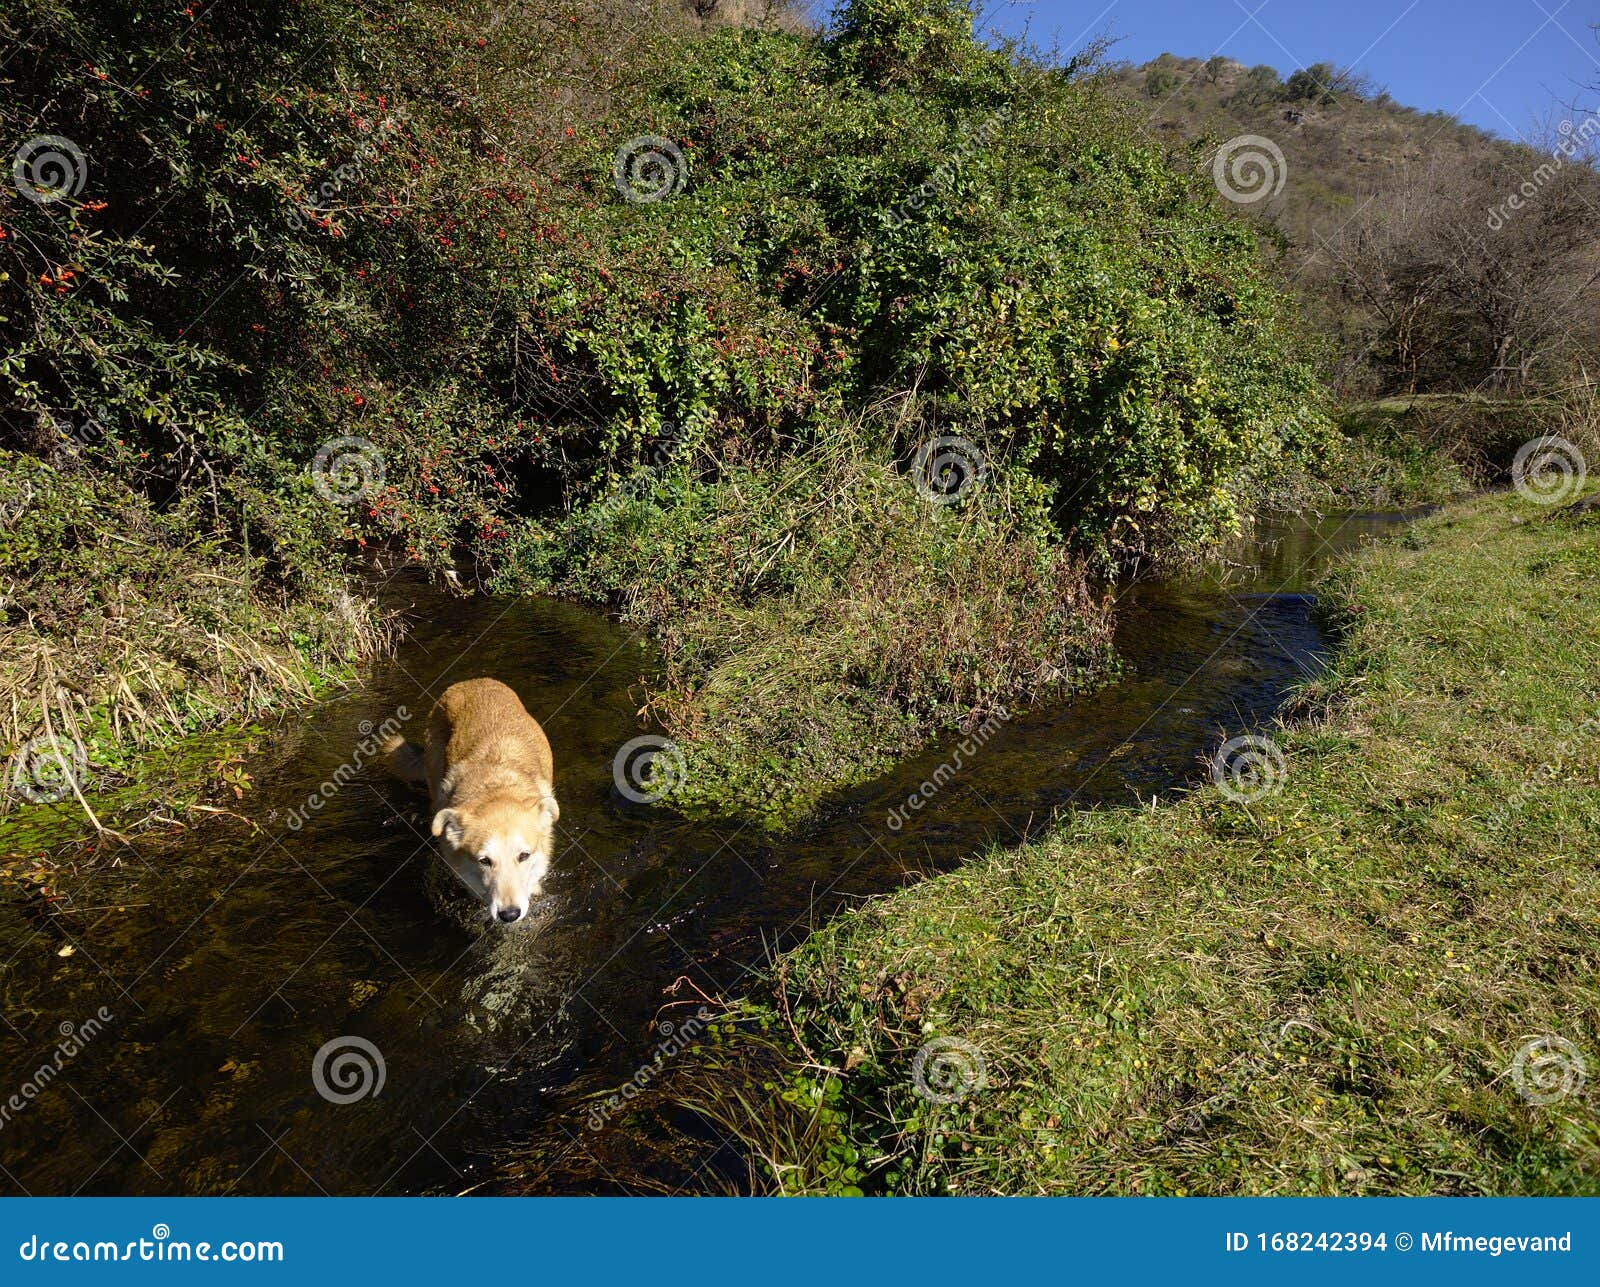 Dog Getting A Bath In A Stream Near The San Antonio River ...